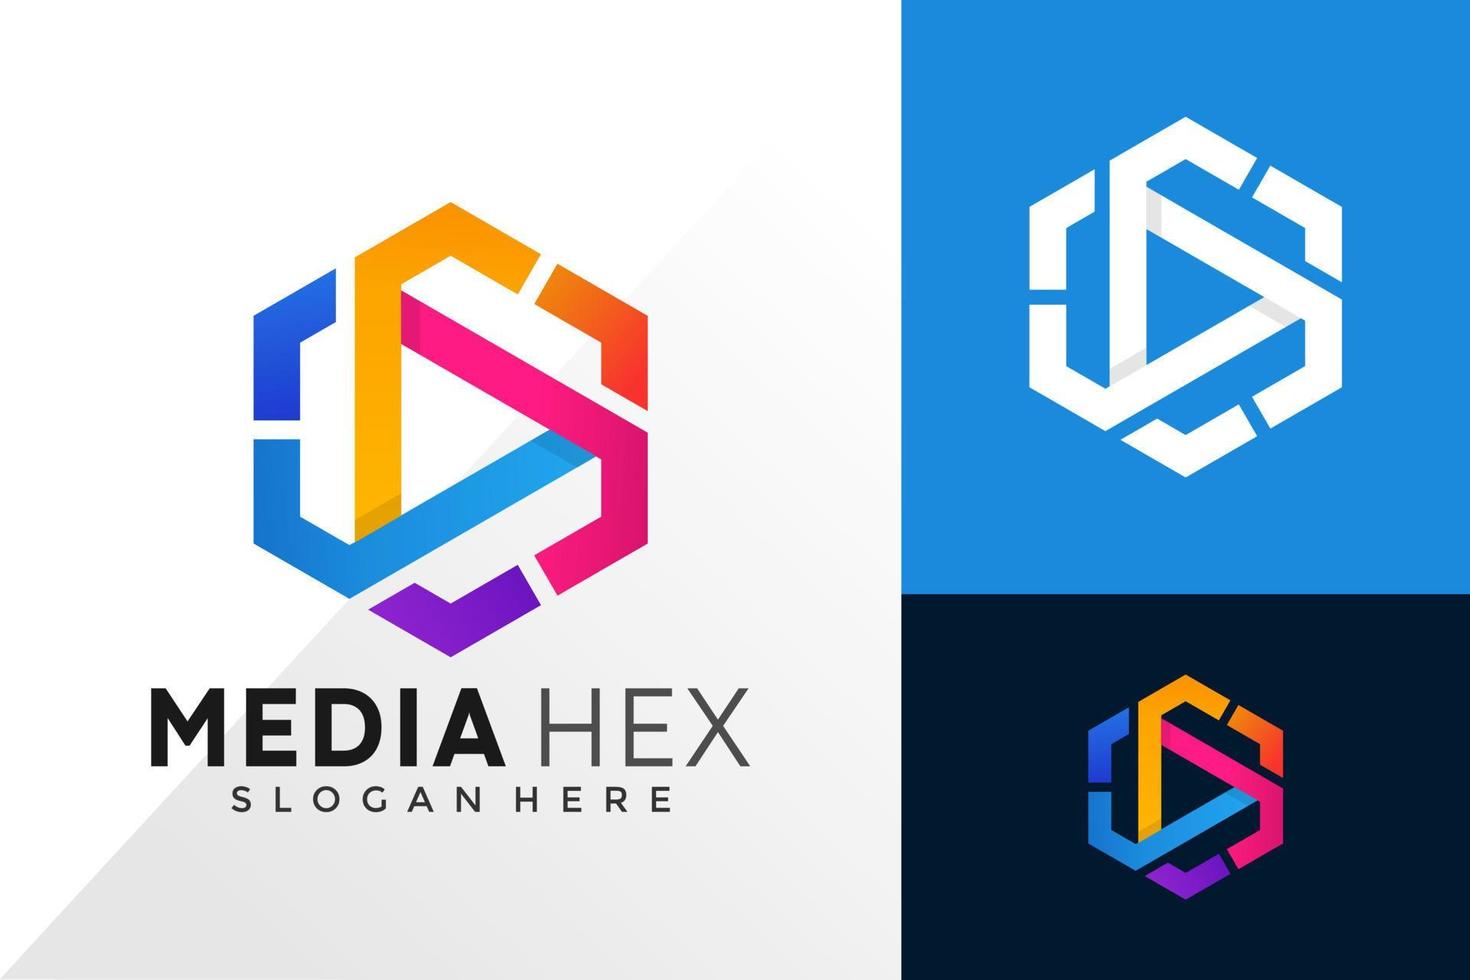 Hexa media play Logo Design Vector Template